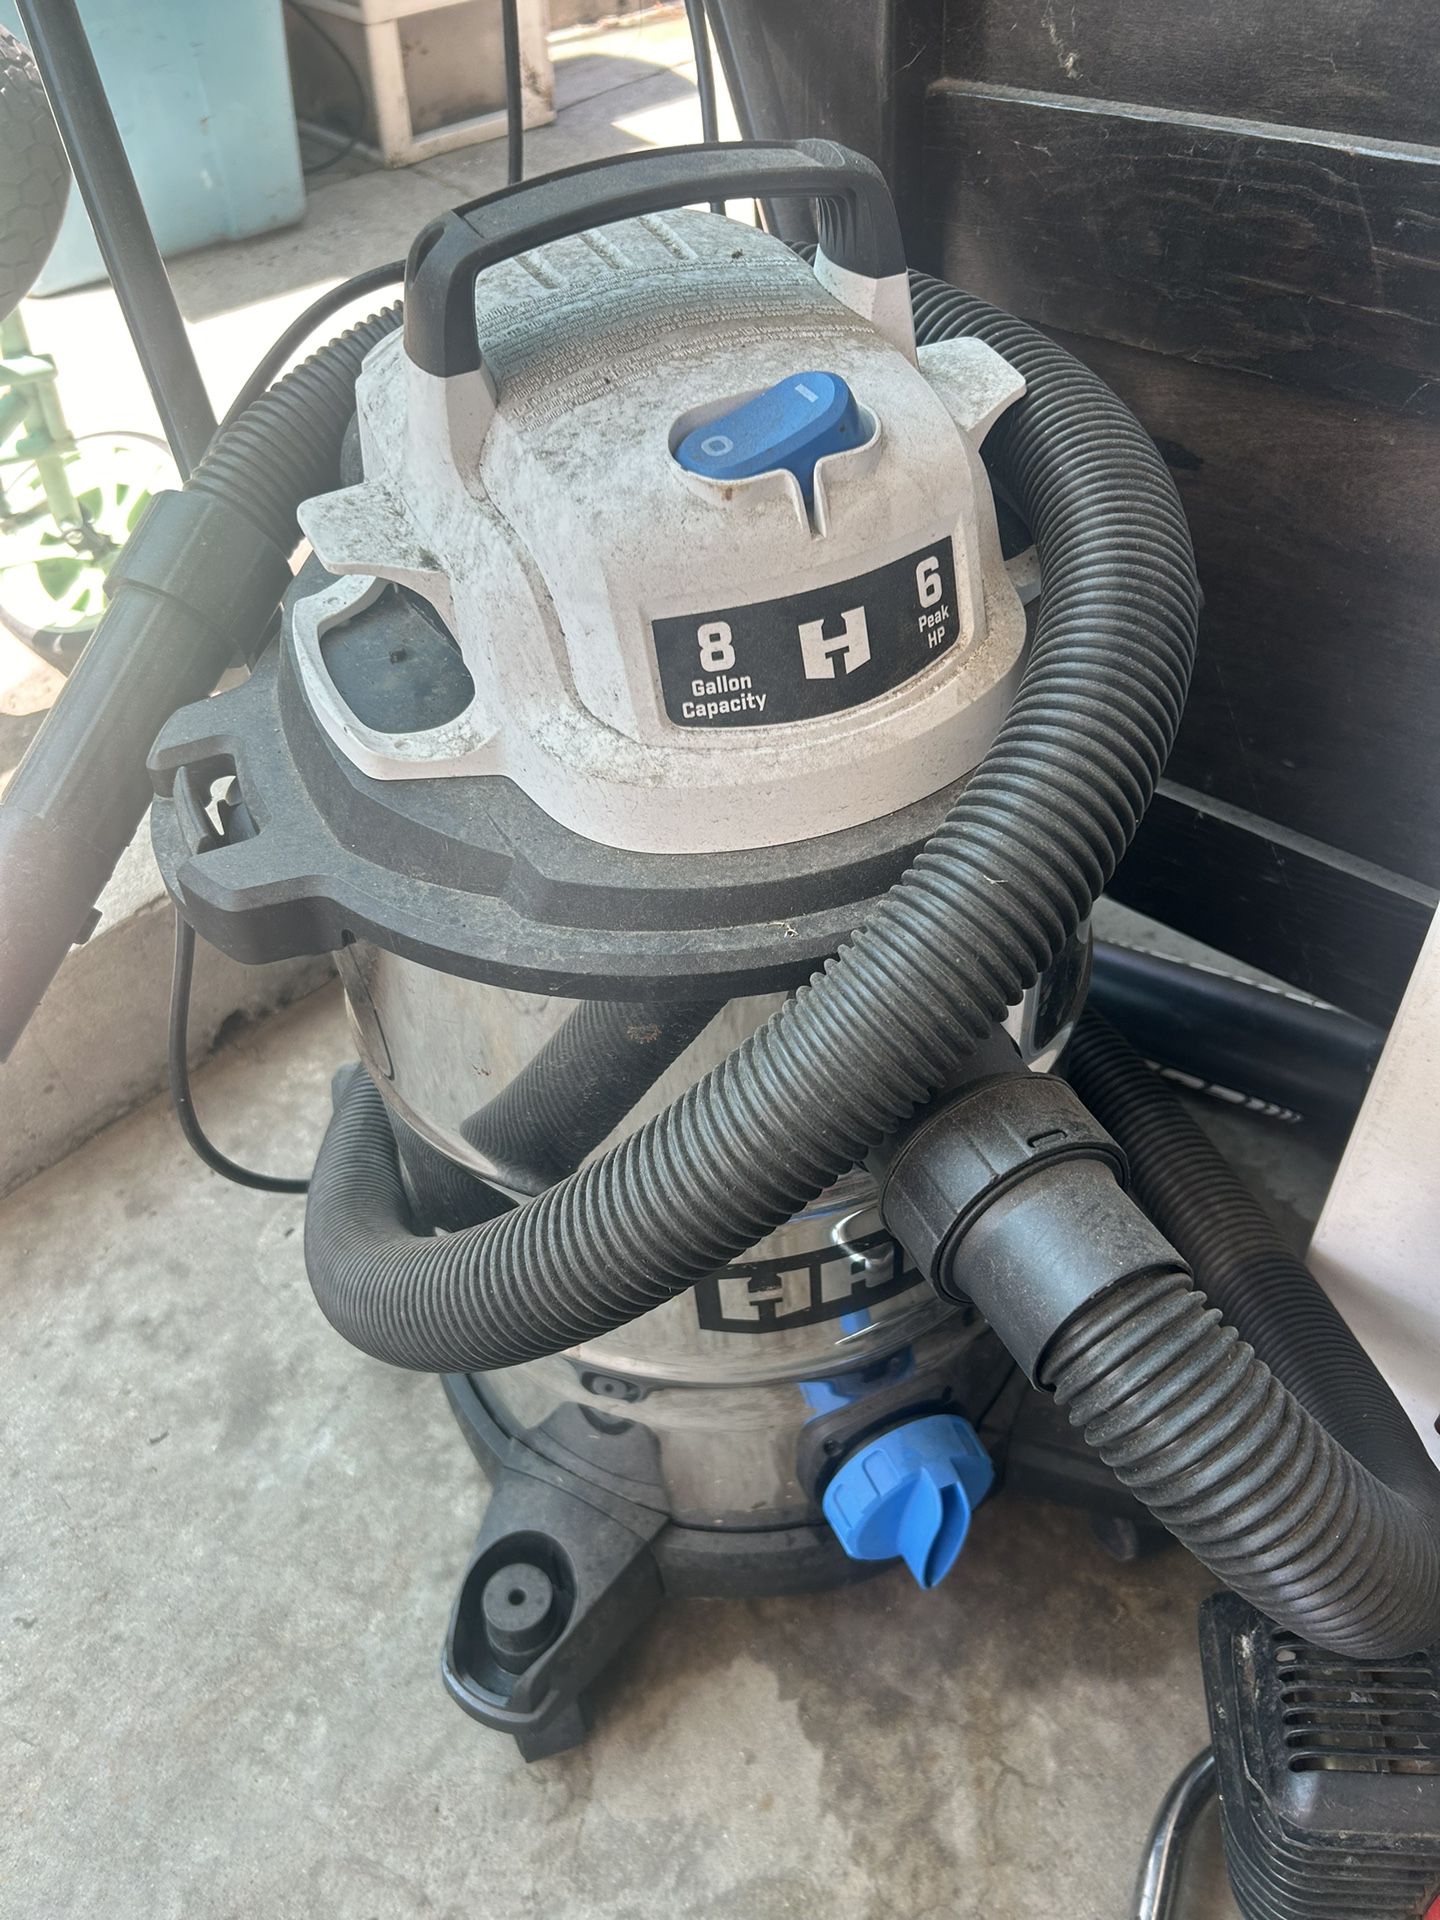 Hartz Wet/dry Vacuum